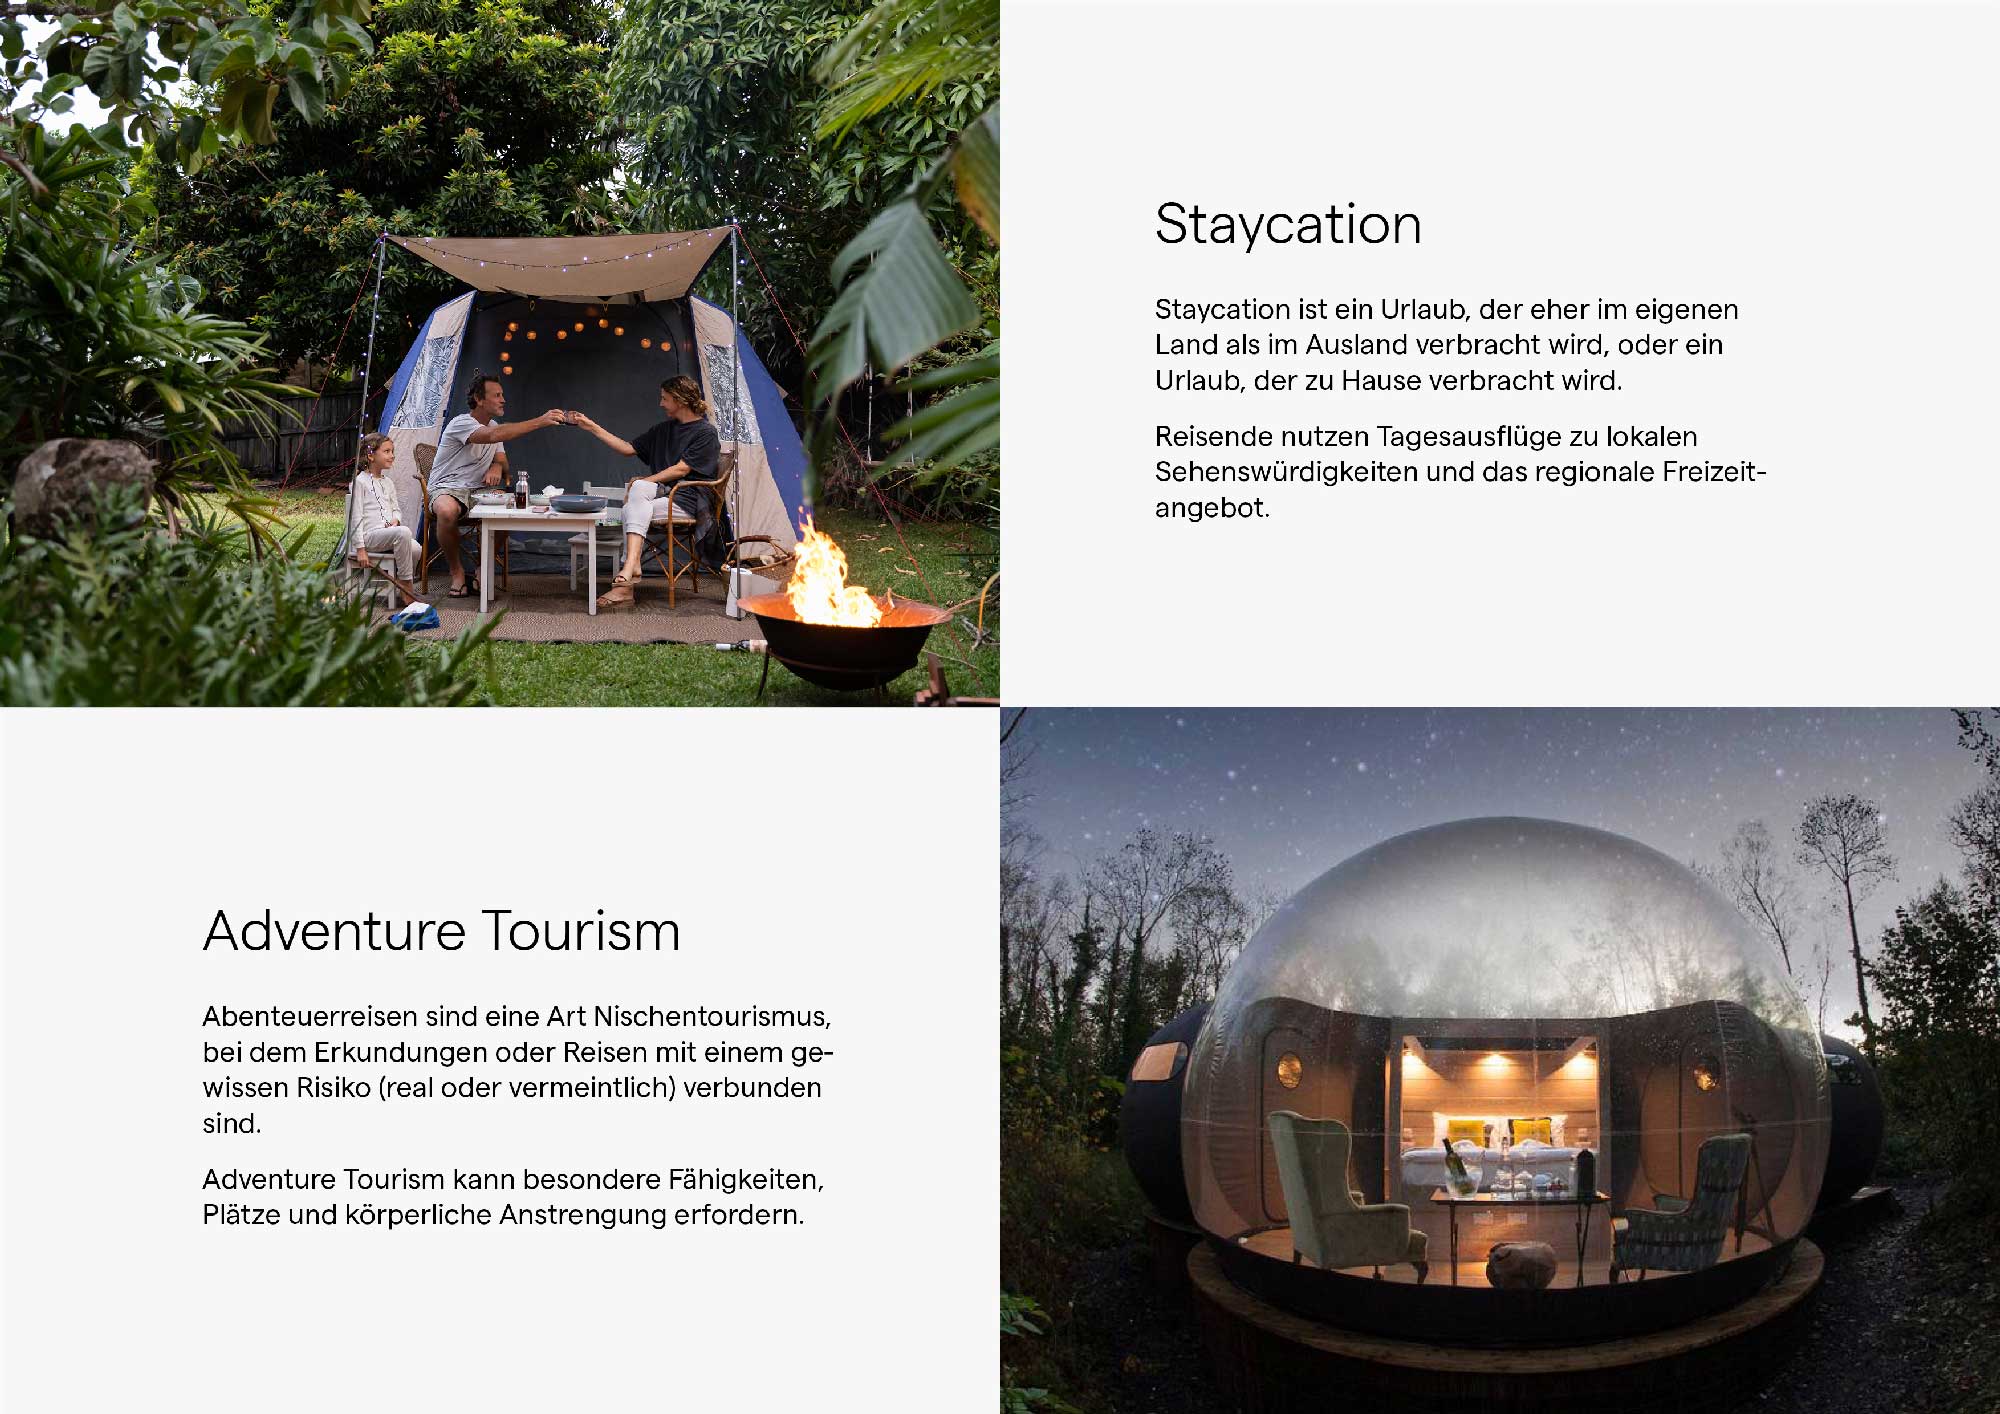 Dieses Bild zeigt zwei Trends im Tourismus: Staycation und Adventure Tourism.